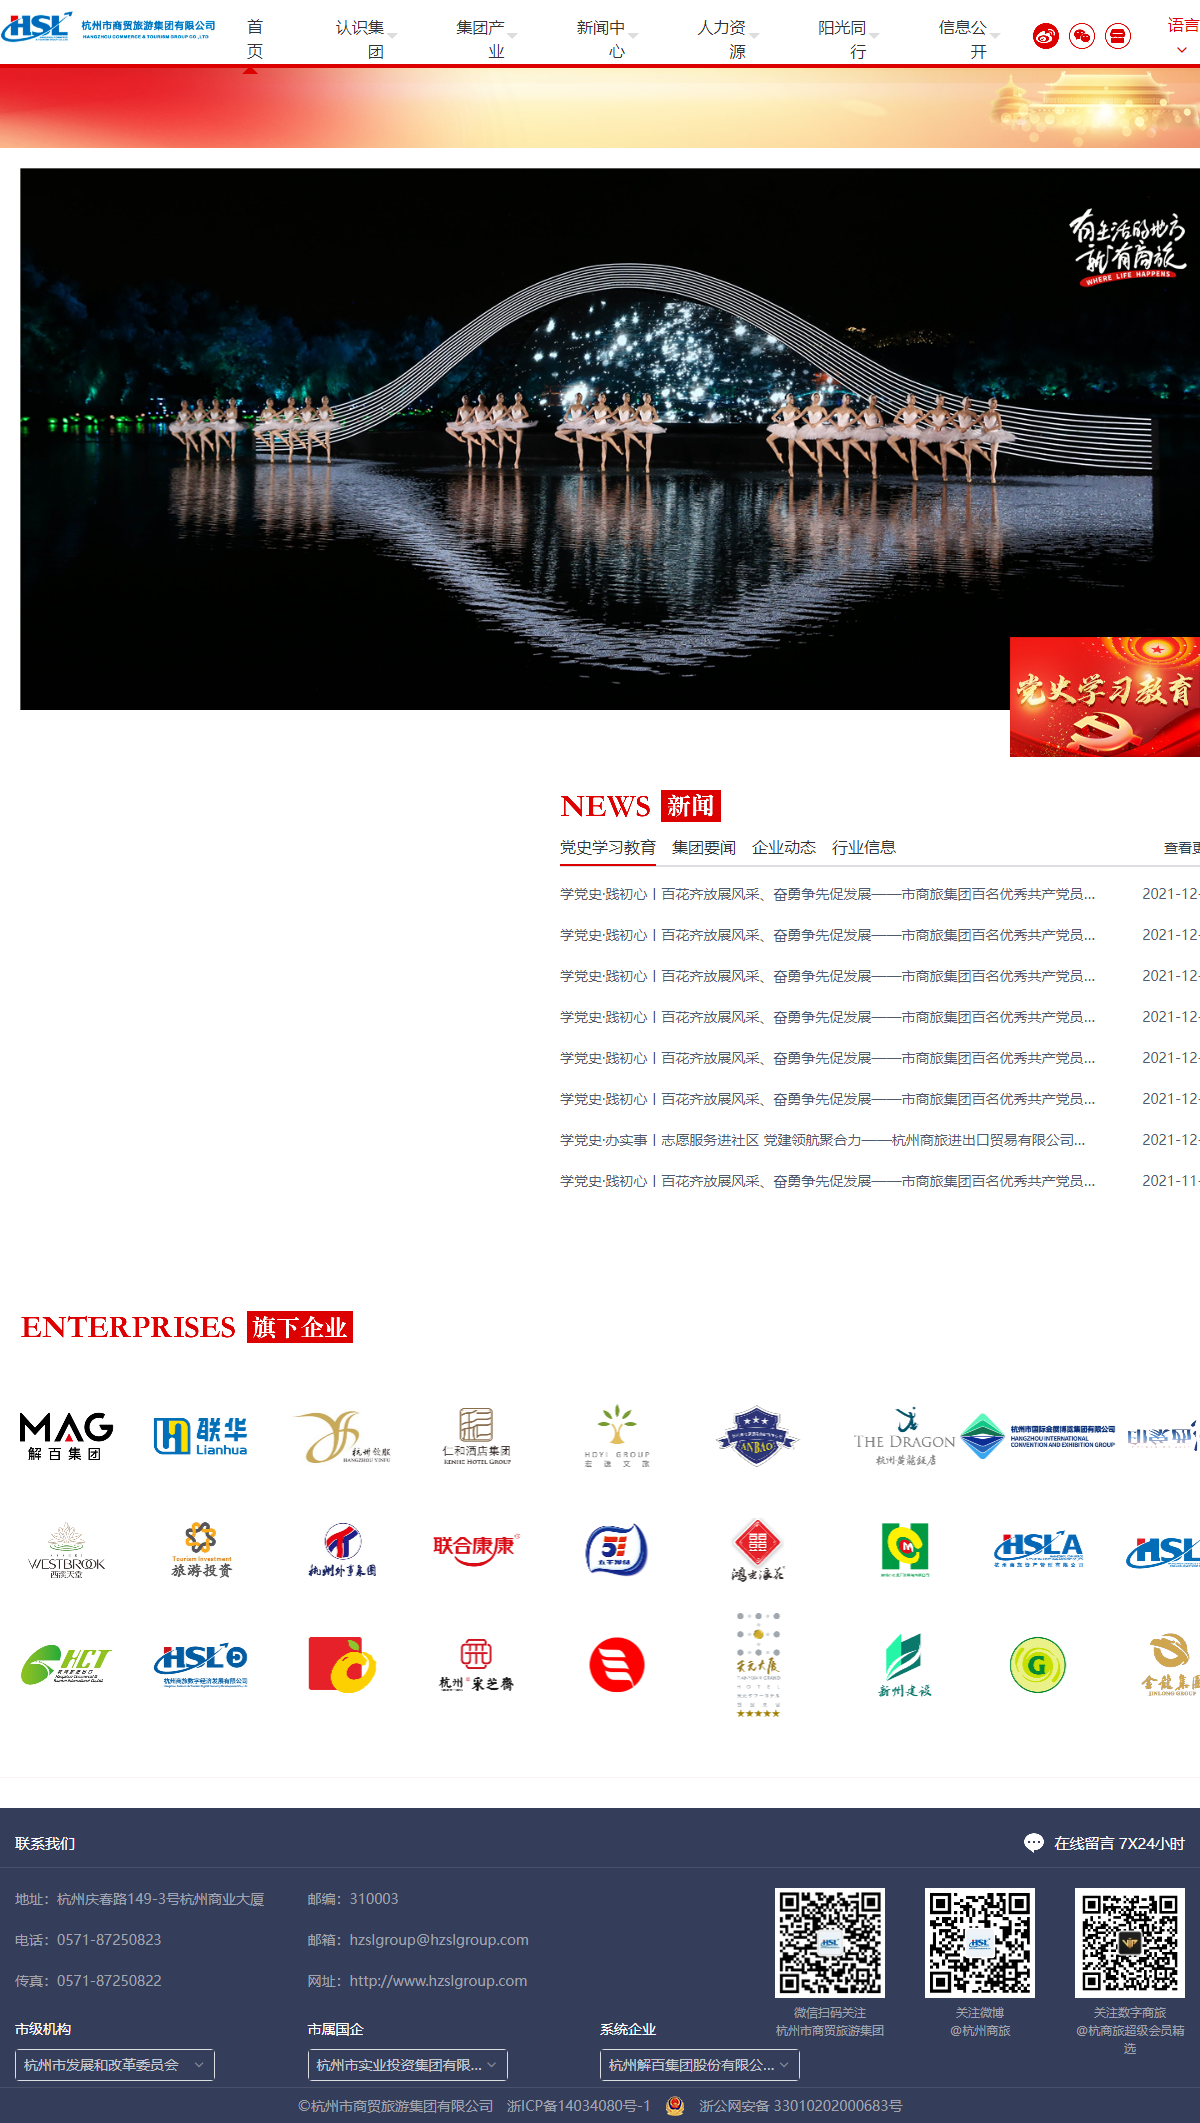 杭州市商贸旅游集团有限公司网站案例